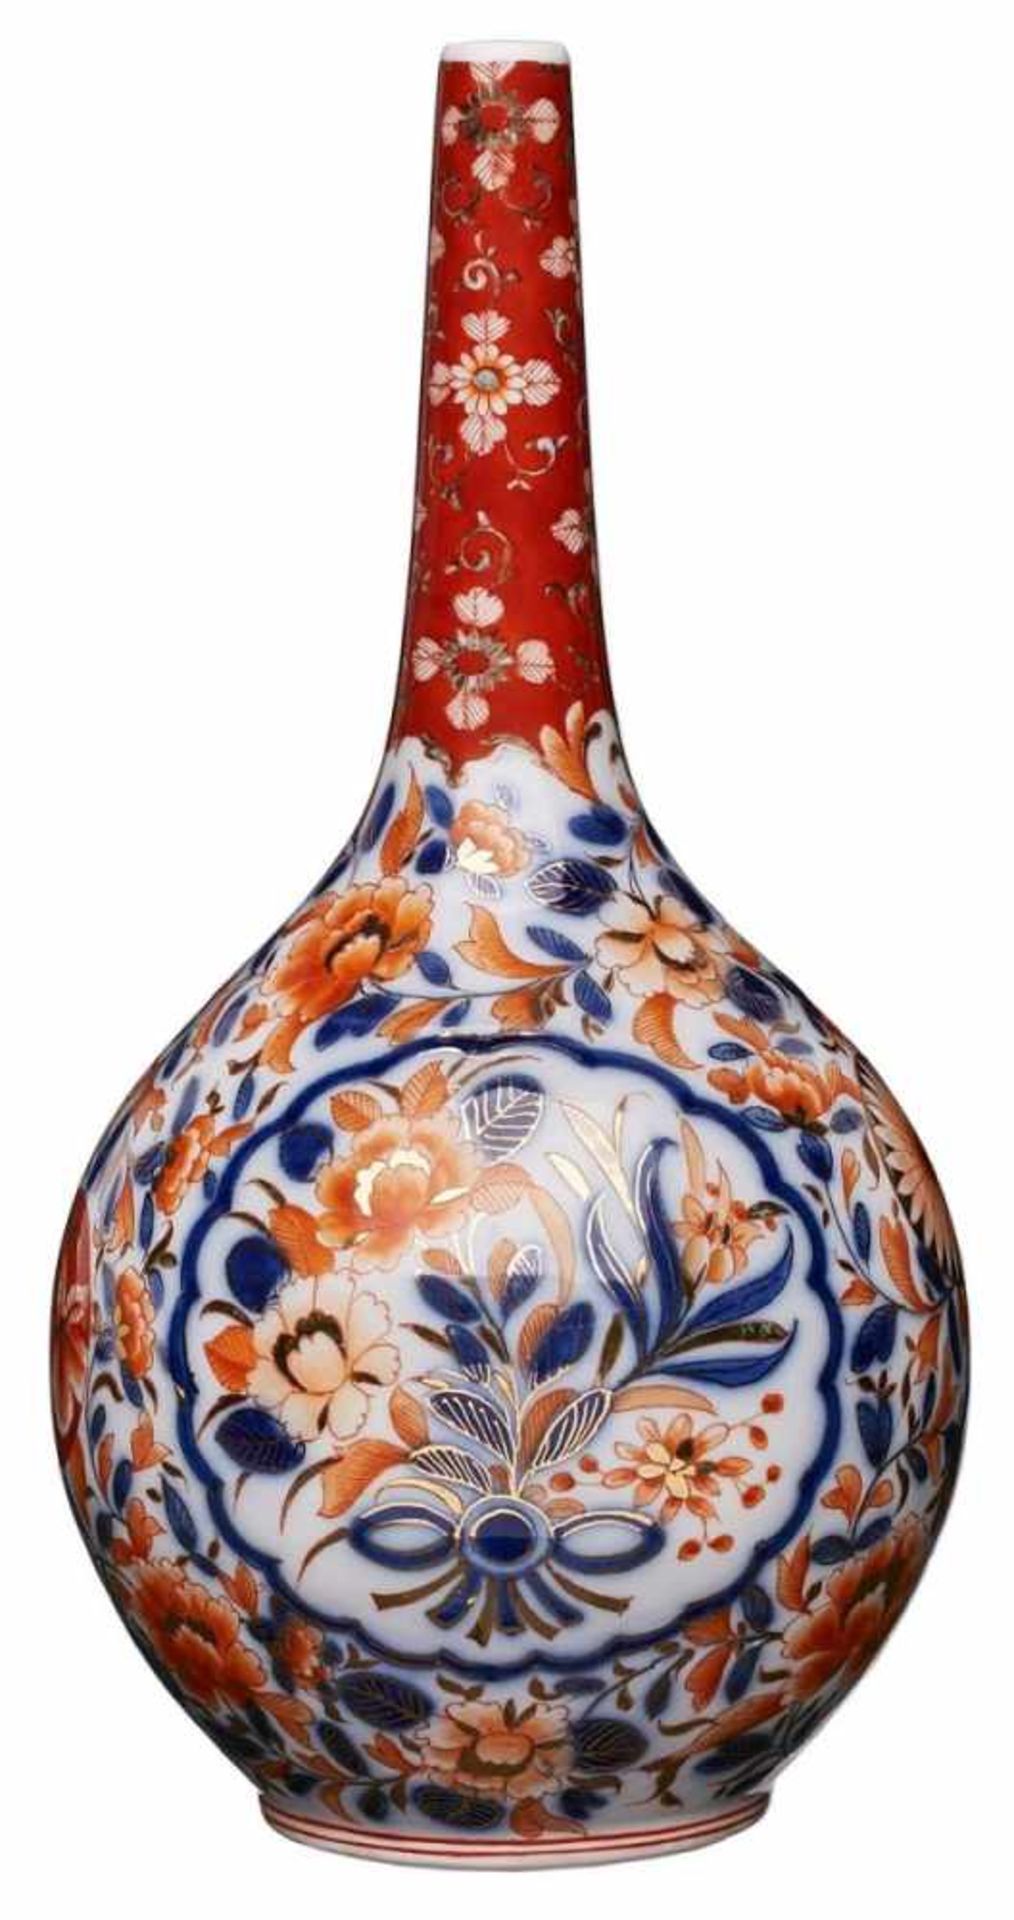 Kl. Vase im Imari-Dekor,wohl deutsch 1. Hälfte 20. Jh. Unterglasur-blaues Dekor m. eisenroter